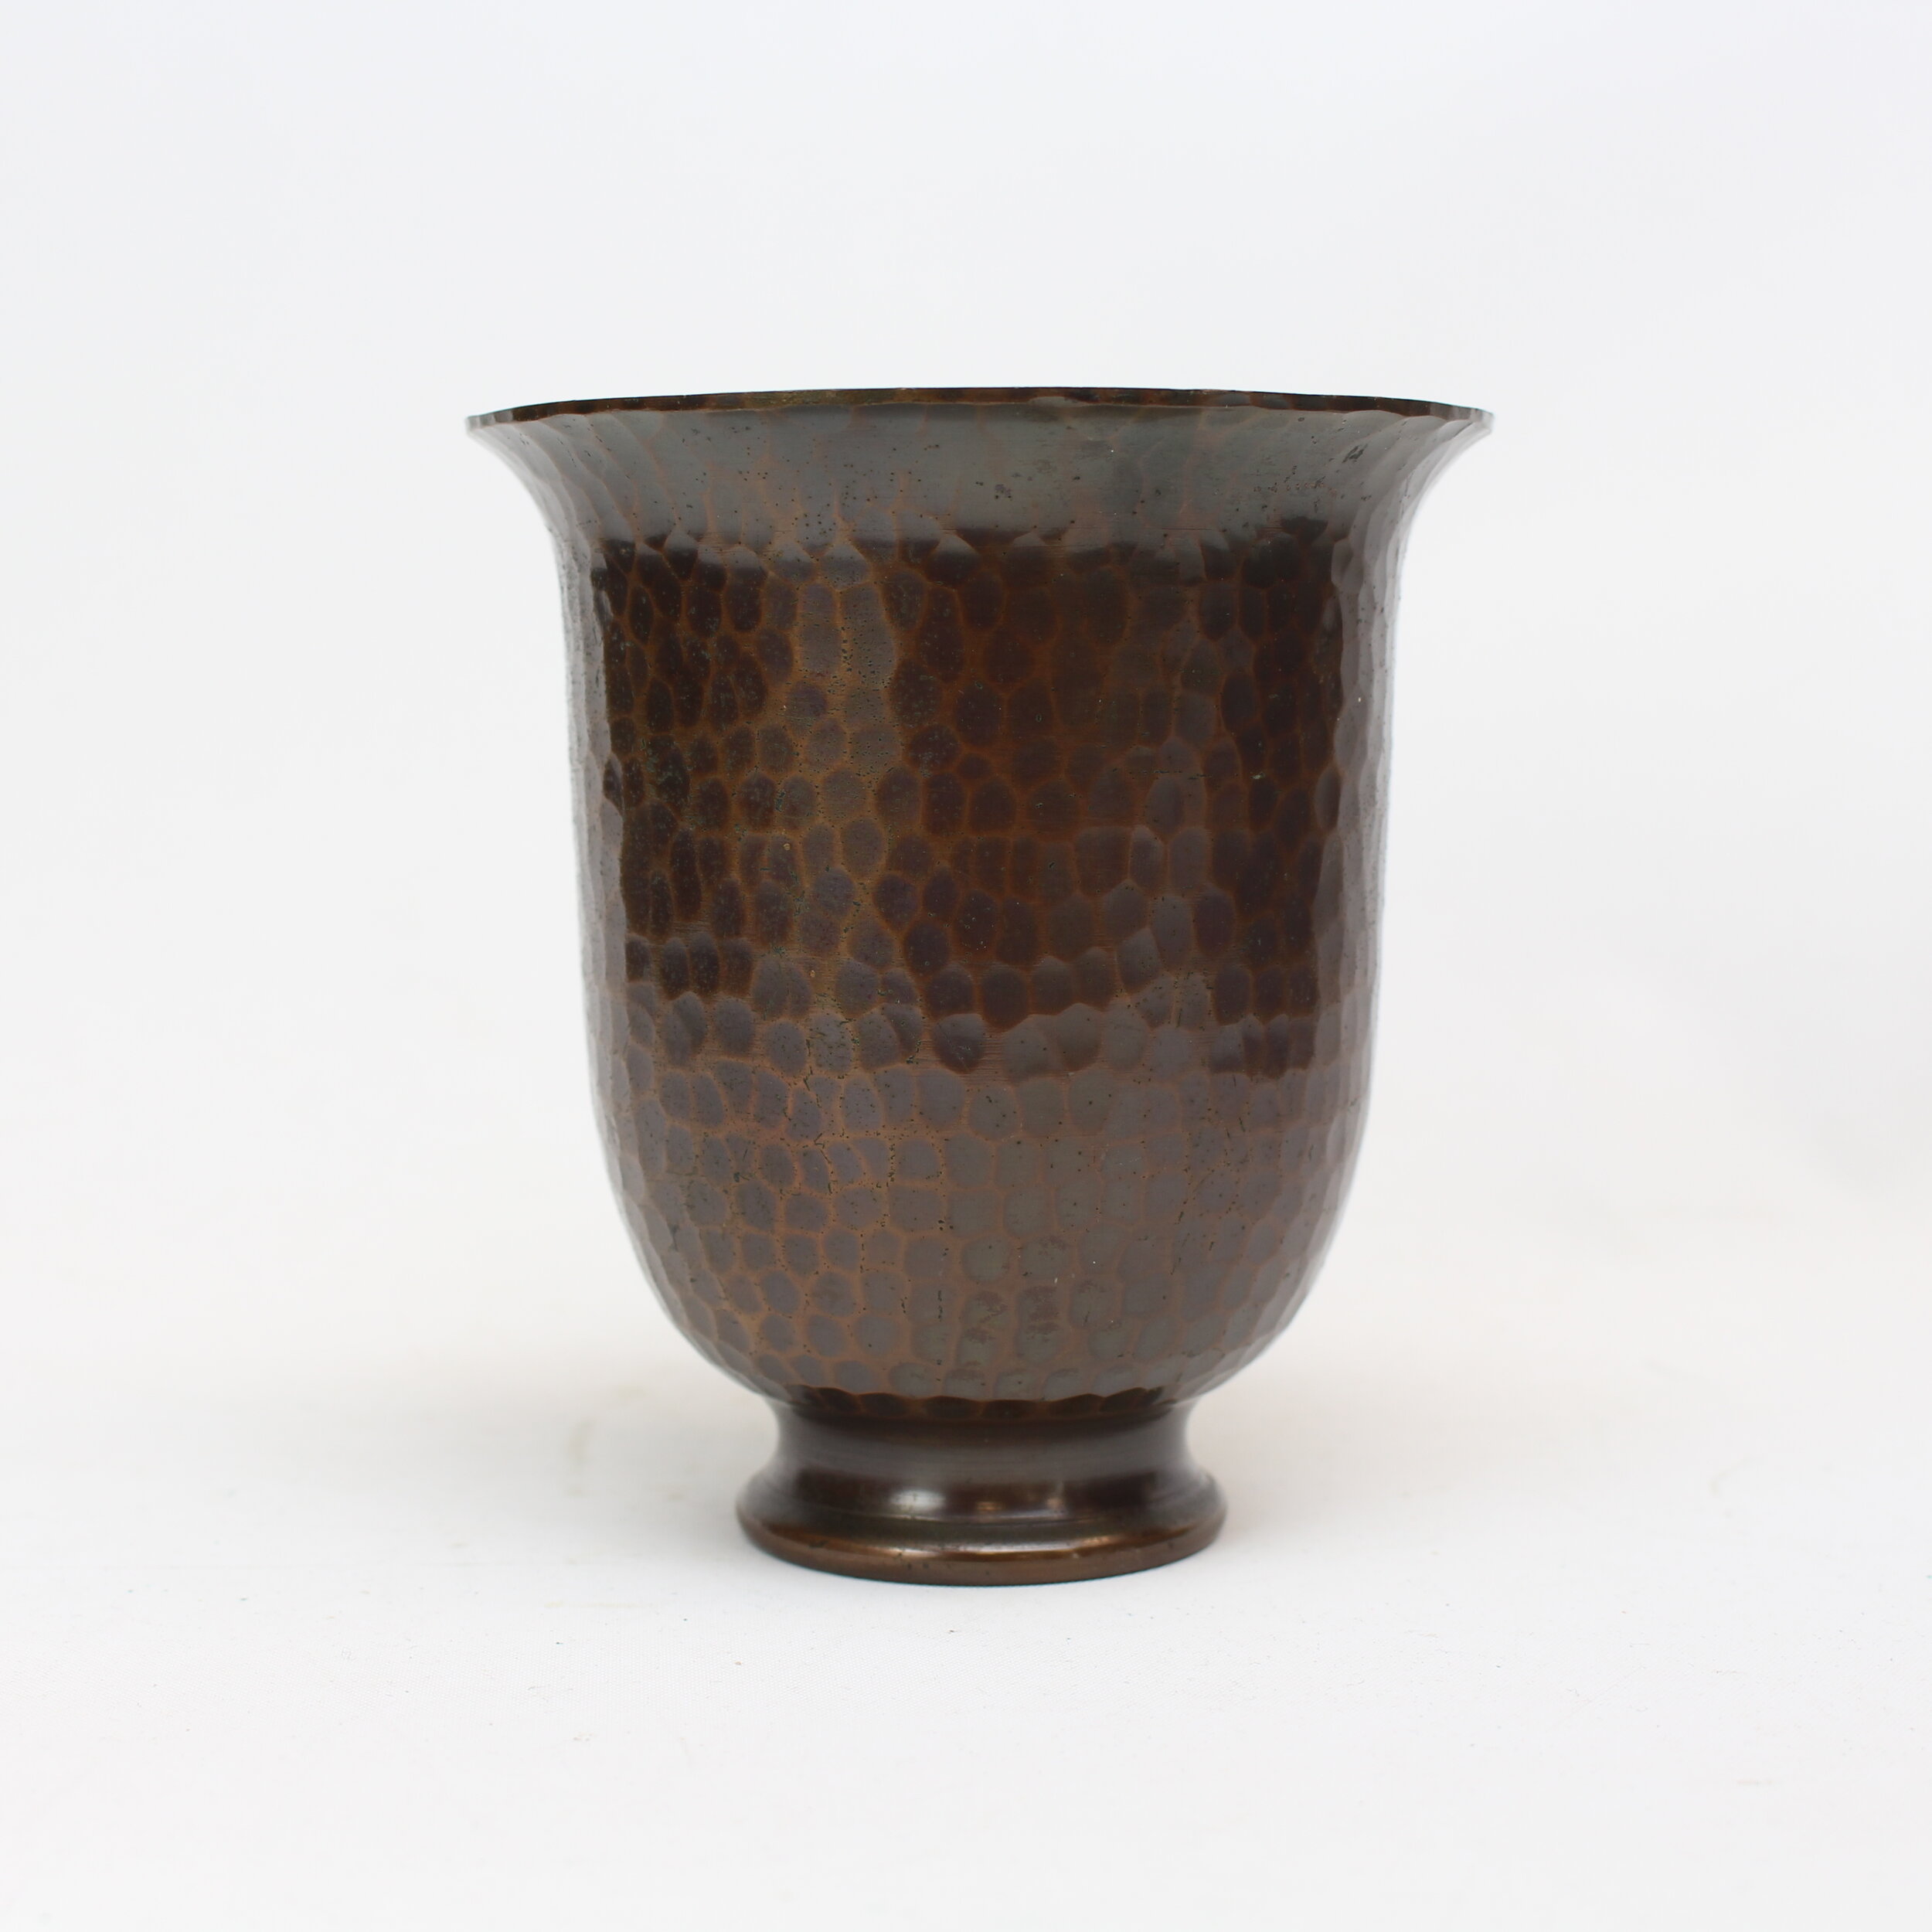 SOLD, Roycroft Inverted Bell Vase